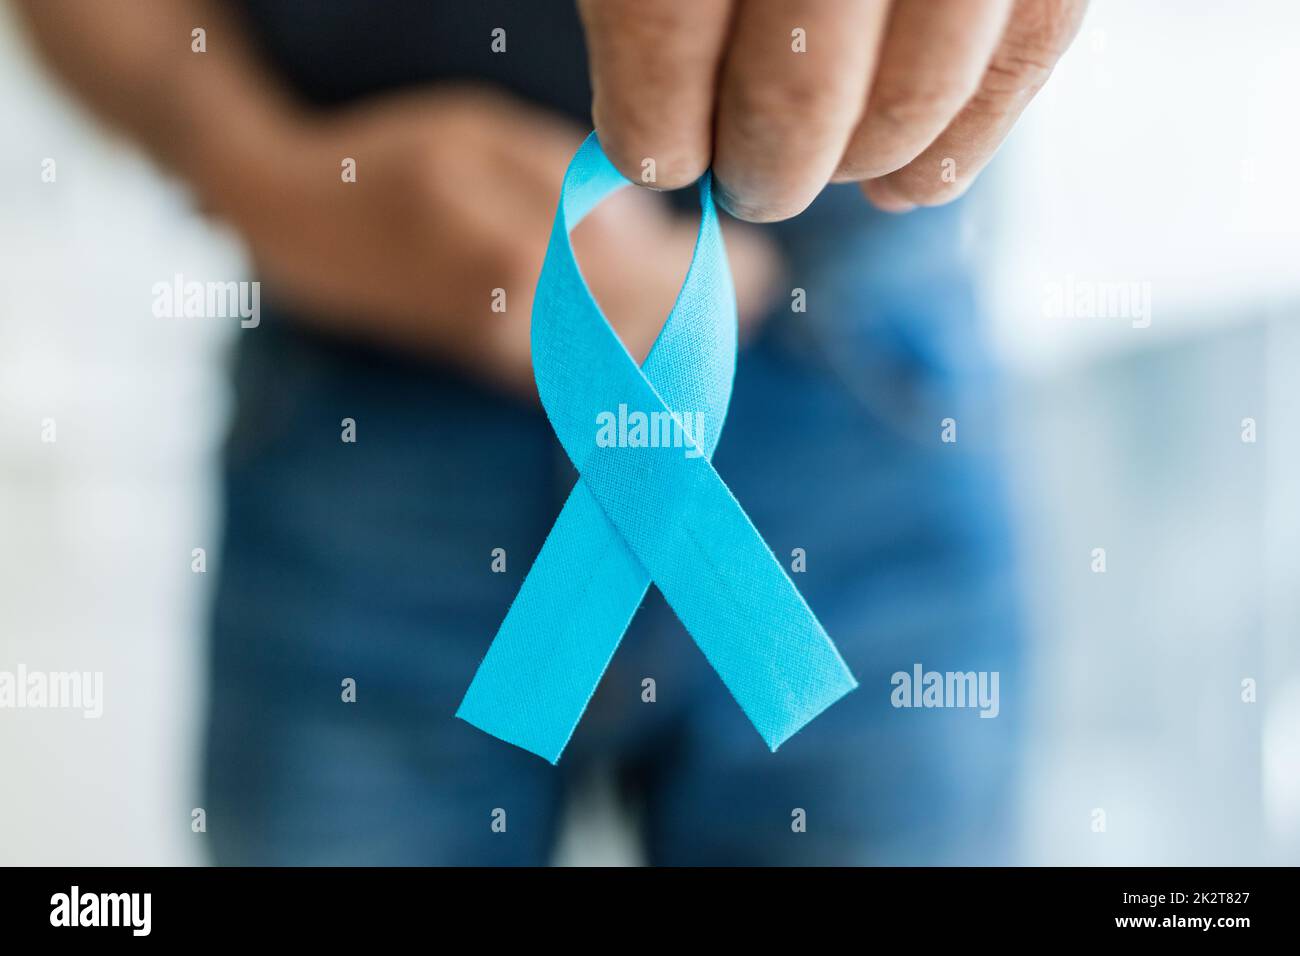 Seniorenmann mit blauem Krebsbewusstseinsband Stockfoto